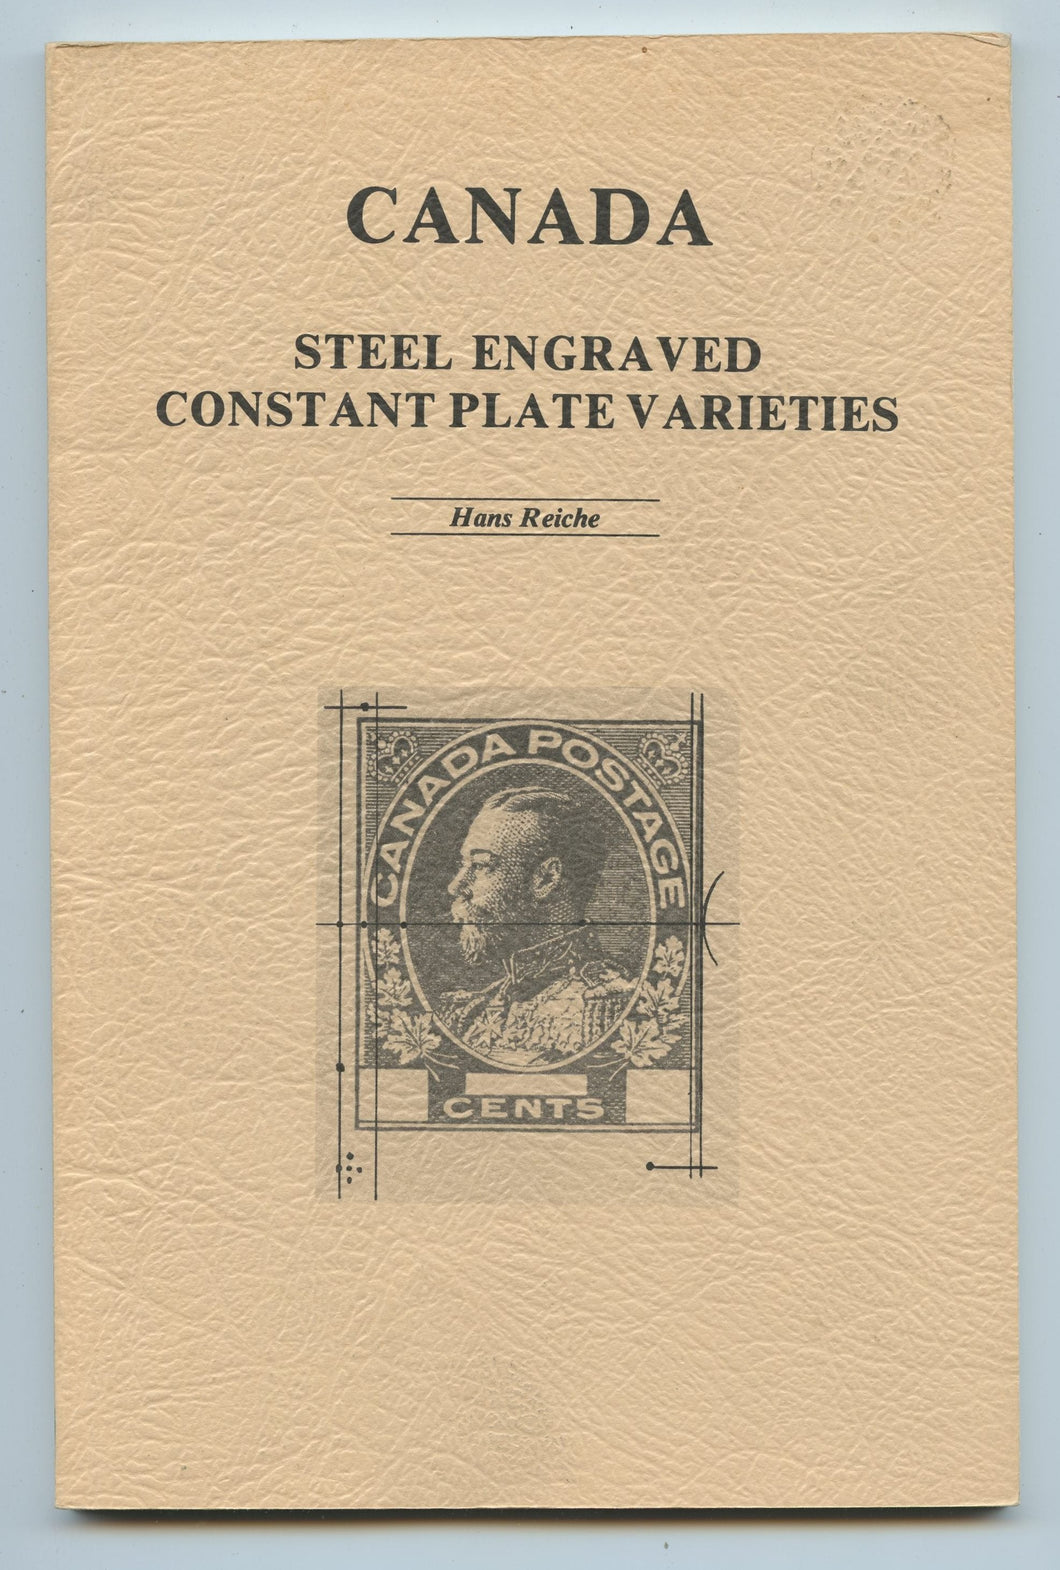 Canada Steel Engraved Constant Plate Varieties